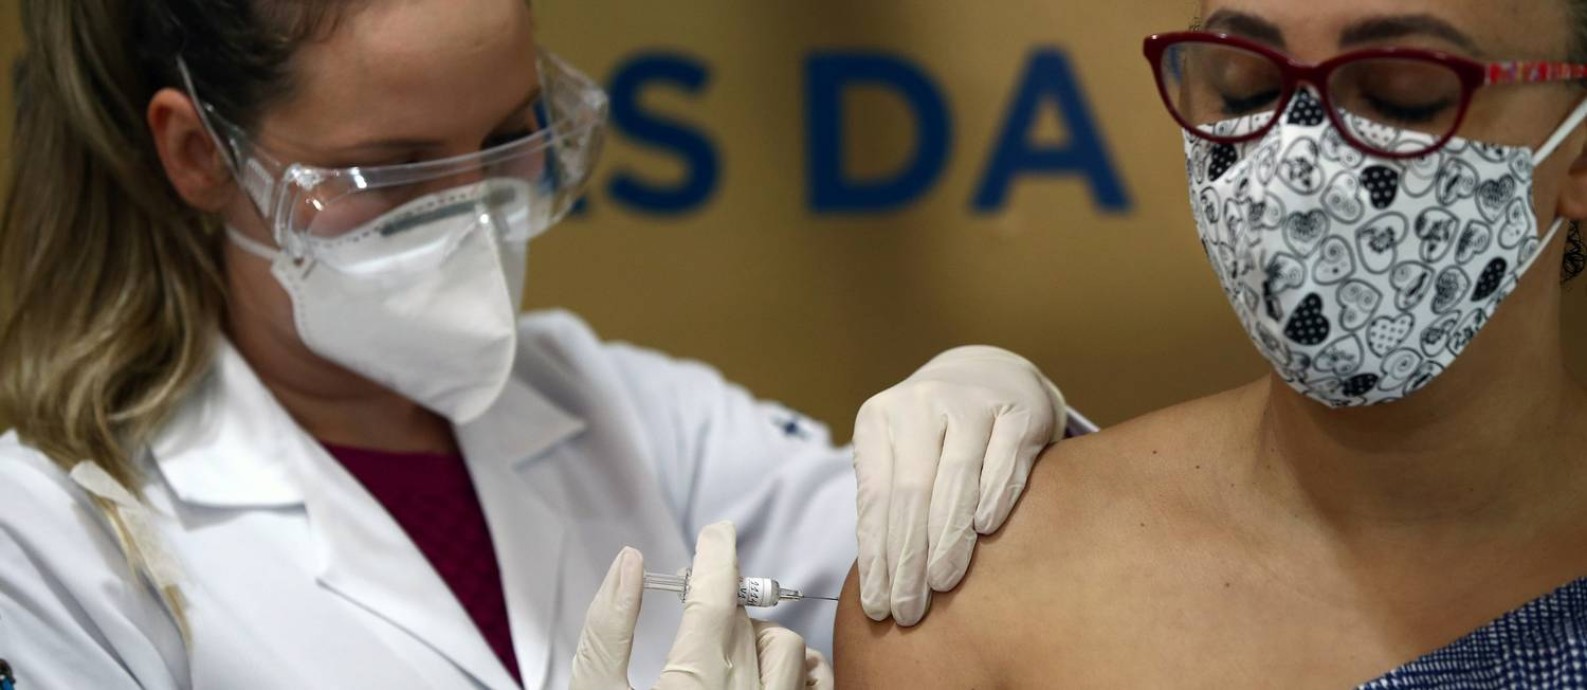 Enfermeira aplica vacina chinesa contra a Covid-19 em voluntária em Porto Alegre. Foto: Diego Vara / Reuters